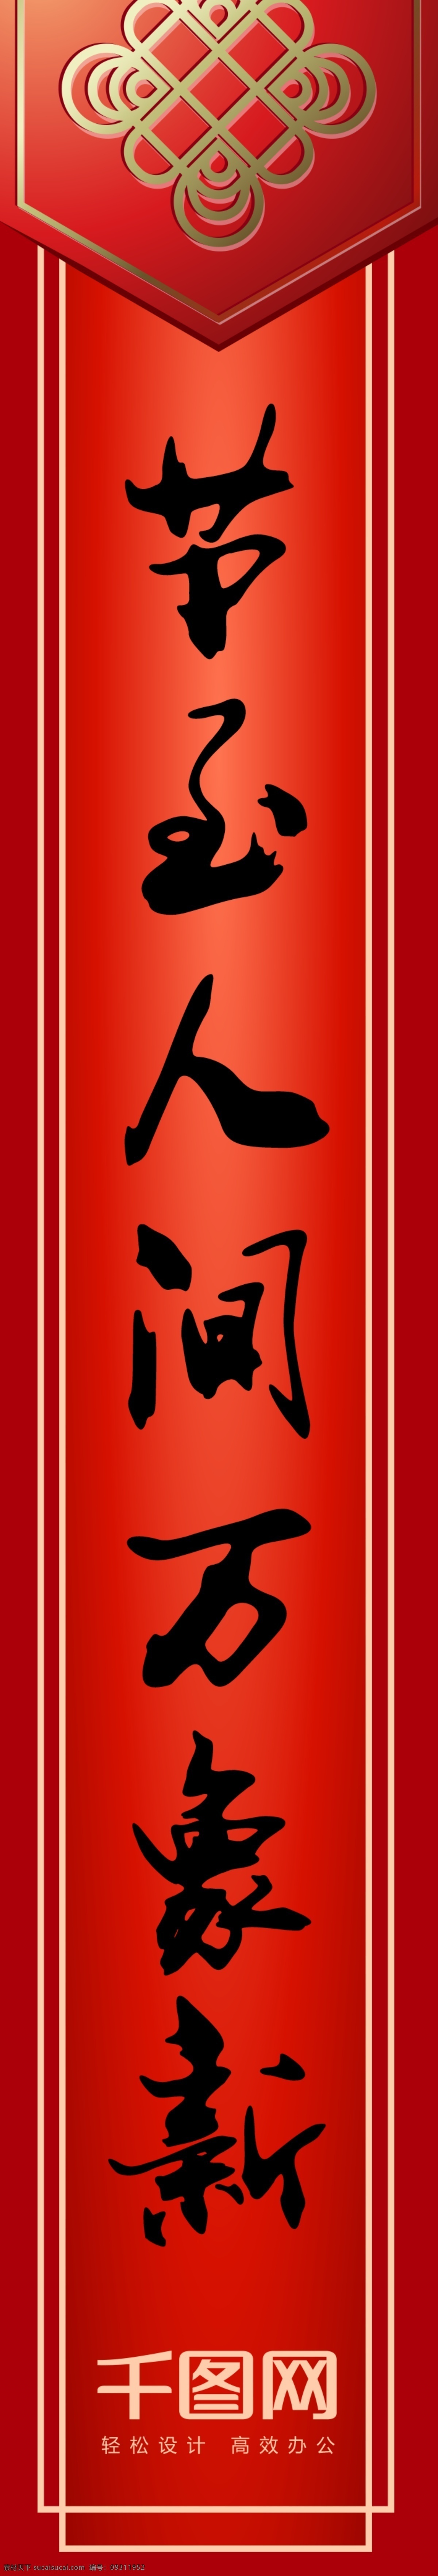 中国 传统节日 春节 新年 对联 拱门 门头 福字 门楼 美陈 毛笔字体 手写字体对联 万事如意